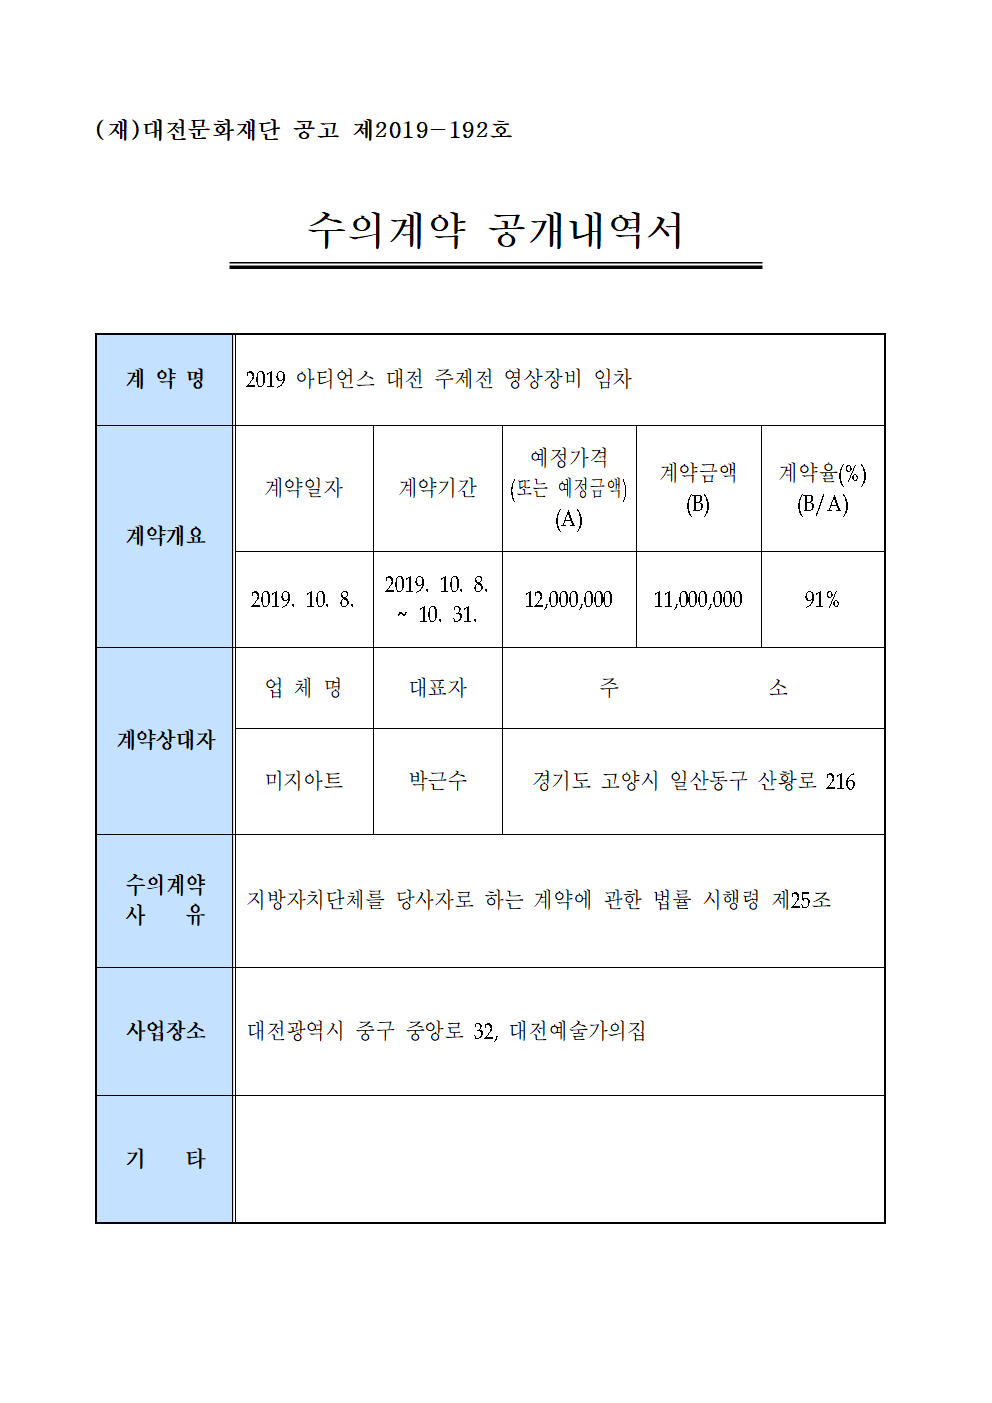 2019 아티언스 대전 주제전 영상장비 임차 용역 수의계약 내역 공개